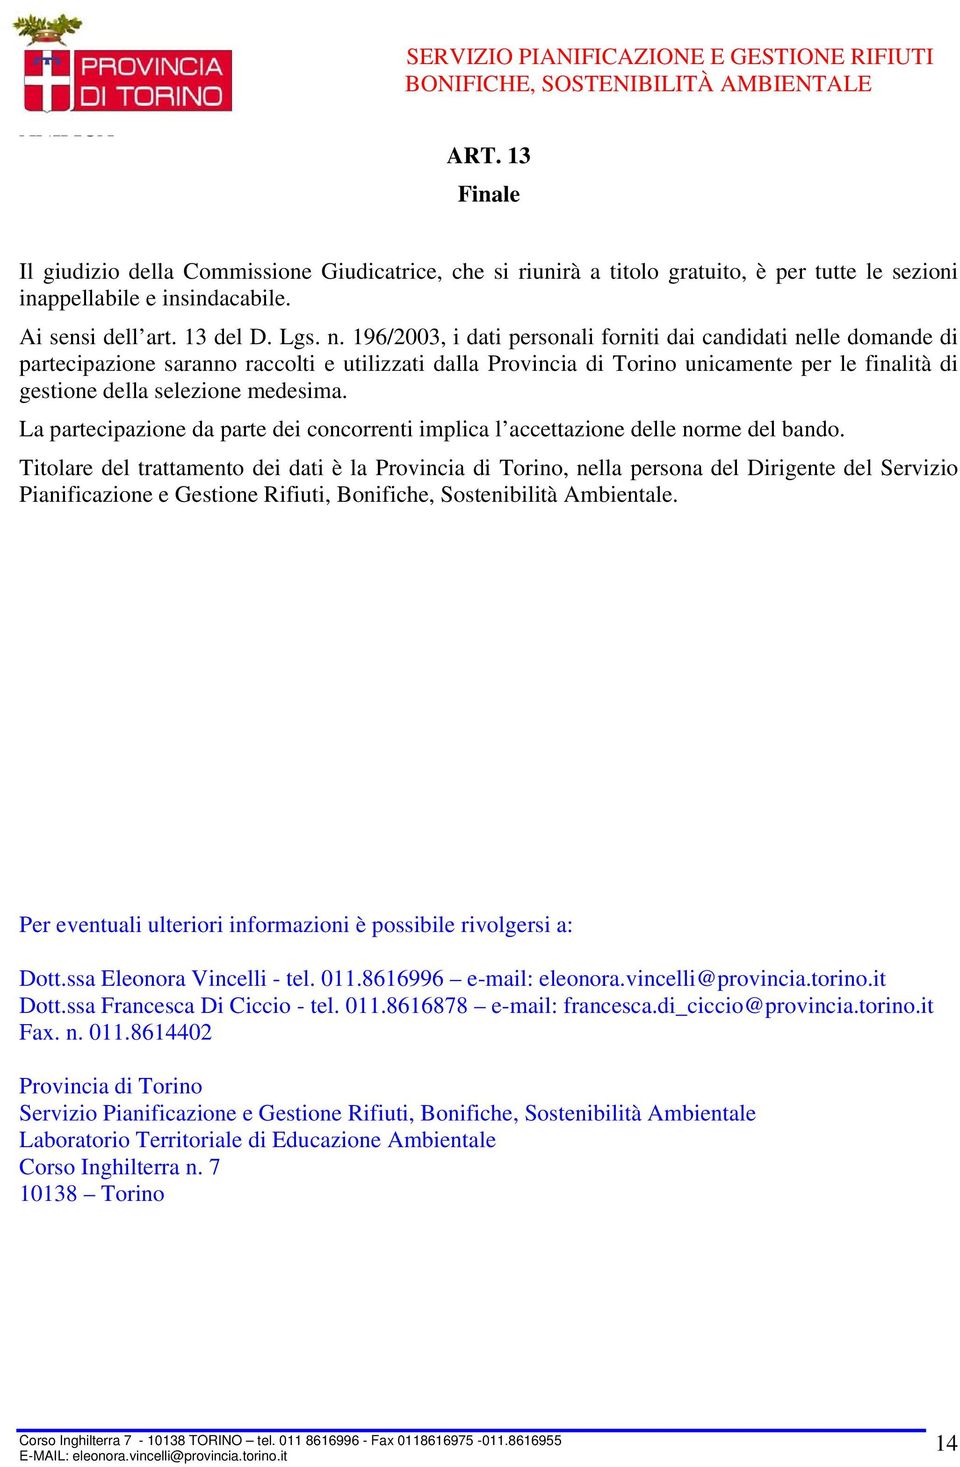 196/2003, i dati personali forniti dai candidati nelle domande di partecipazione saranno raccolti e utilizzati dalla Provincia di Torino unicamente per le finalità di gestione della selezione